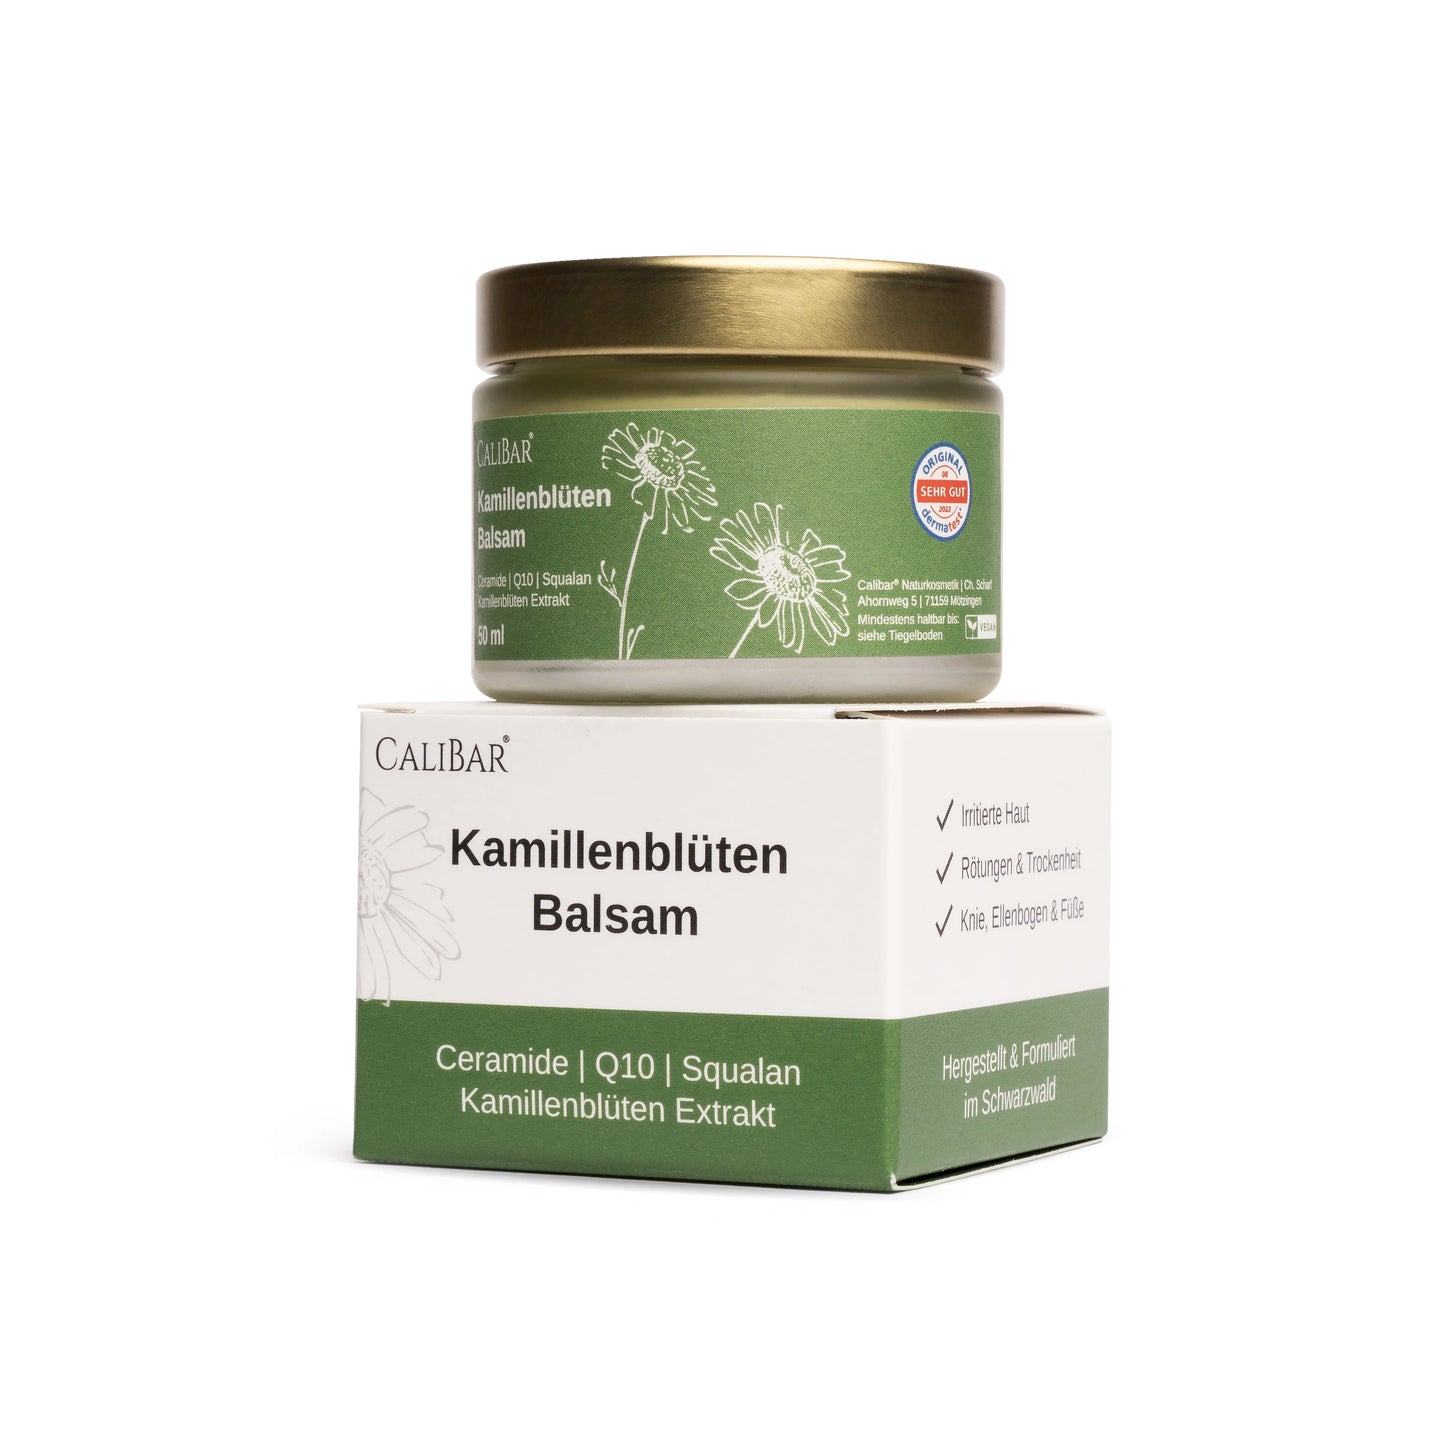 Calibar® Kamillenblüten Balsam